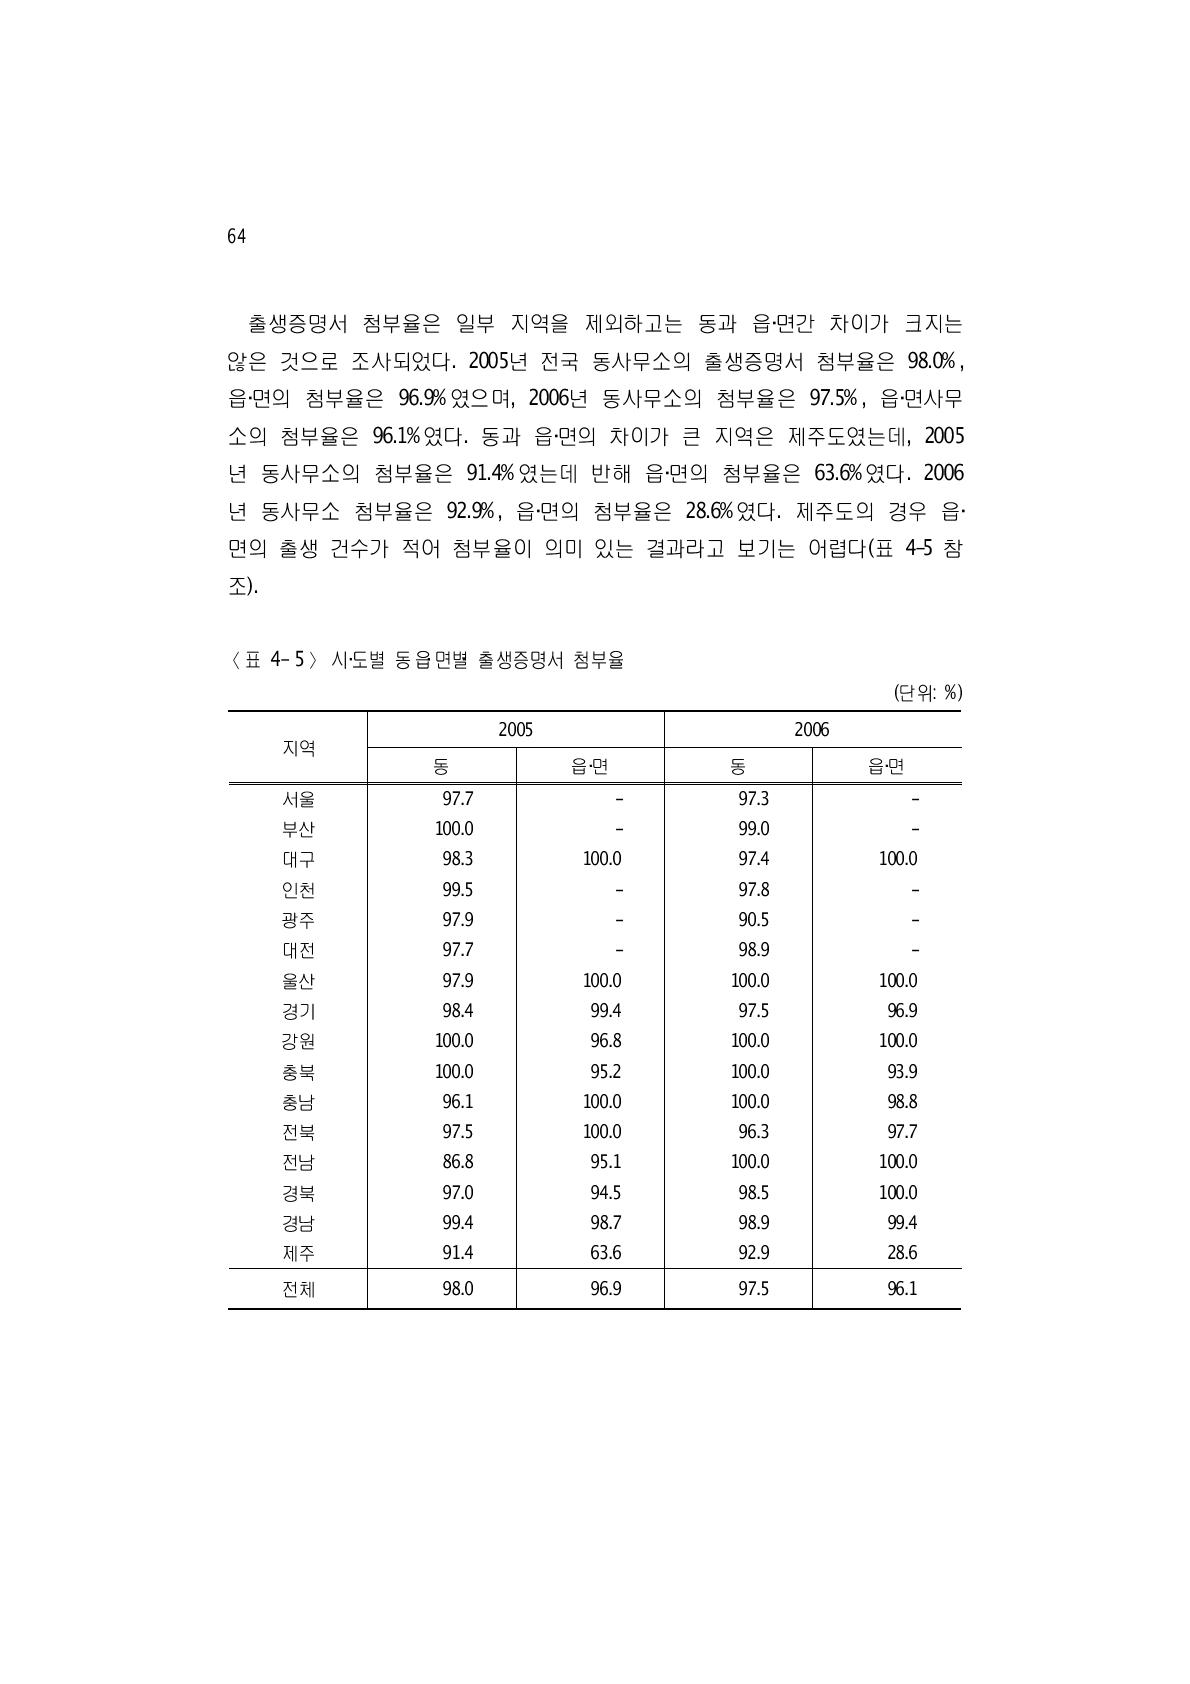 시‧도별 동읍‧면별‧출생증명서 첨부율